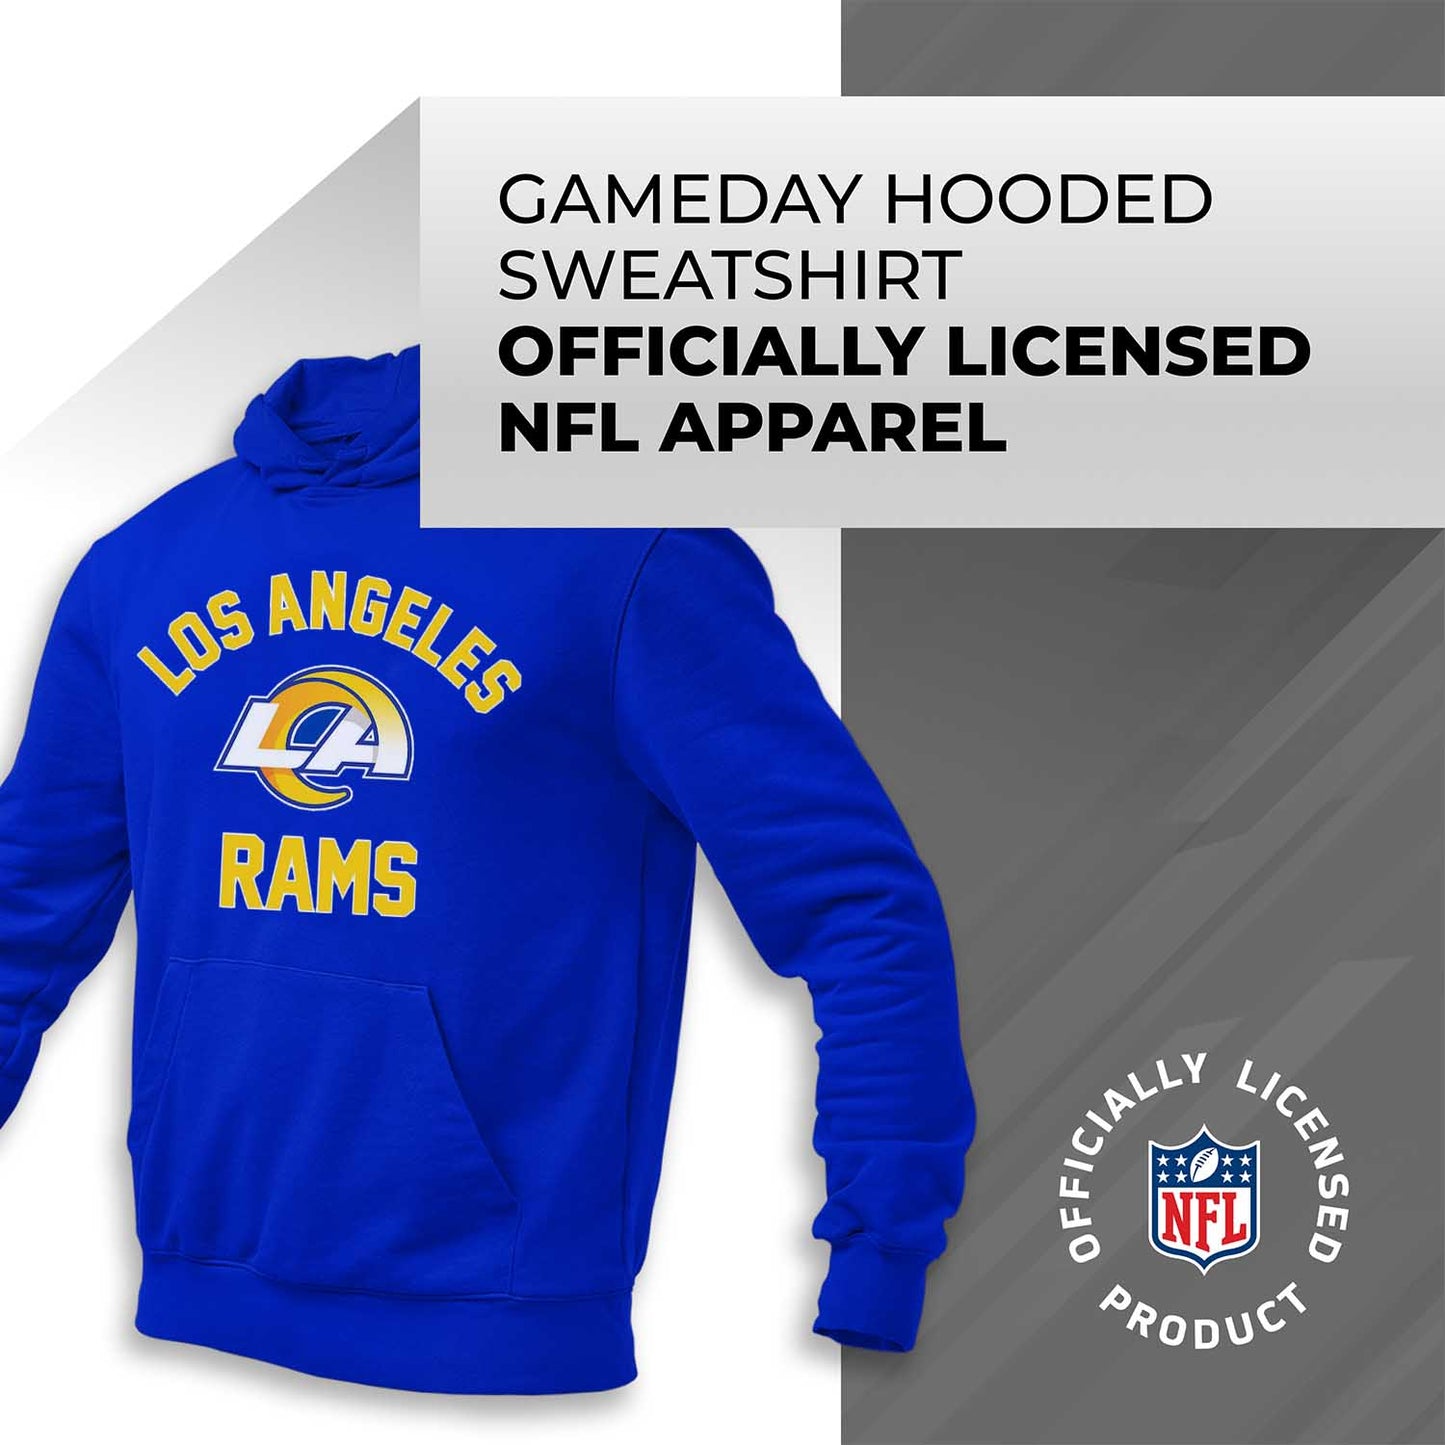 Los Angeles Rams NFL Adult Gameday Hooded Sweatshirt - Royal